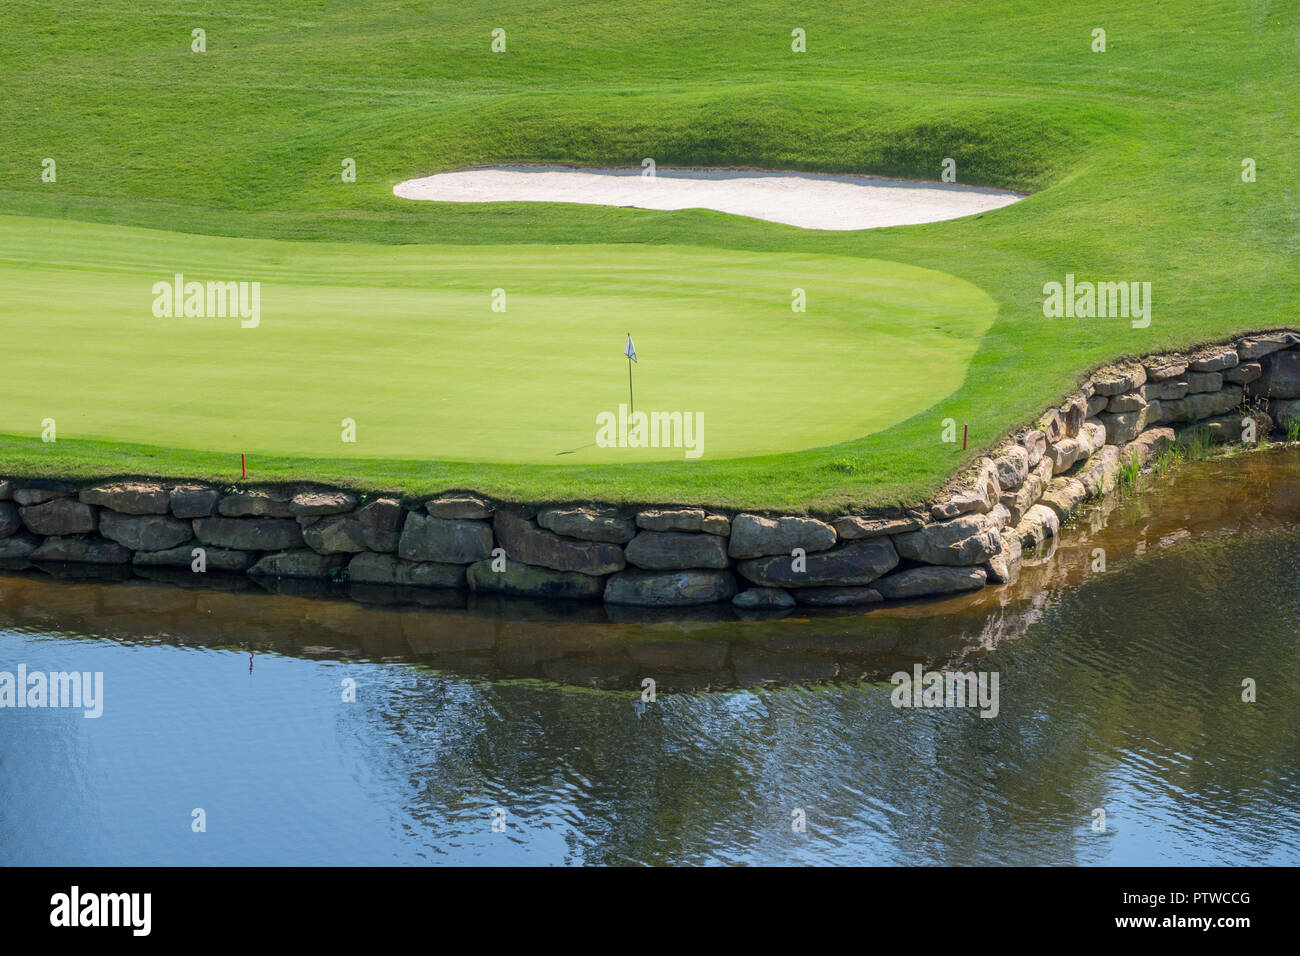 Orificio en el desafiante campo de golf de lujo con agua y arena. Foto de stock